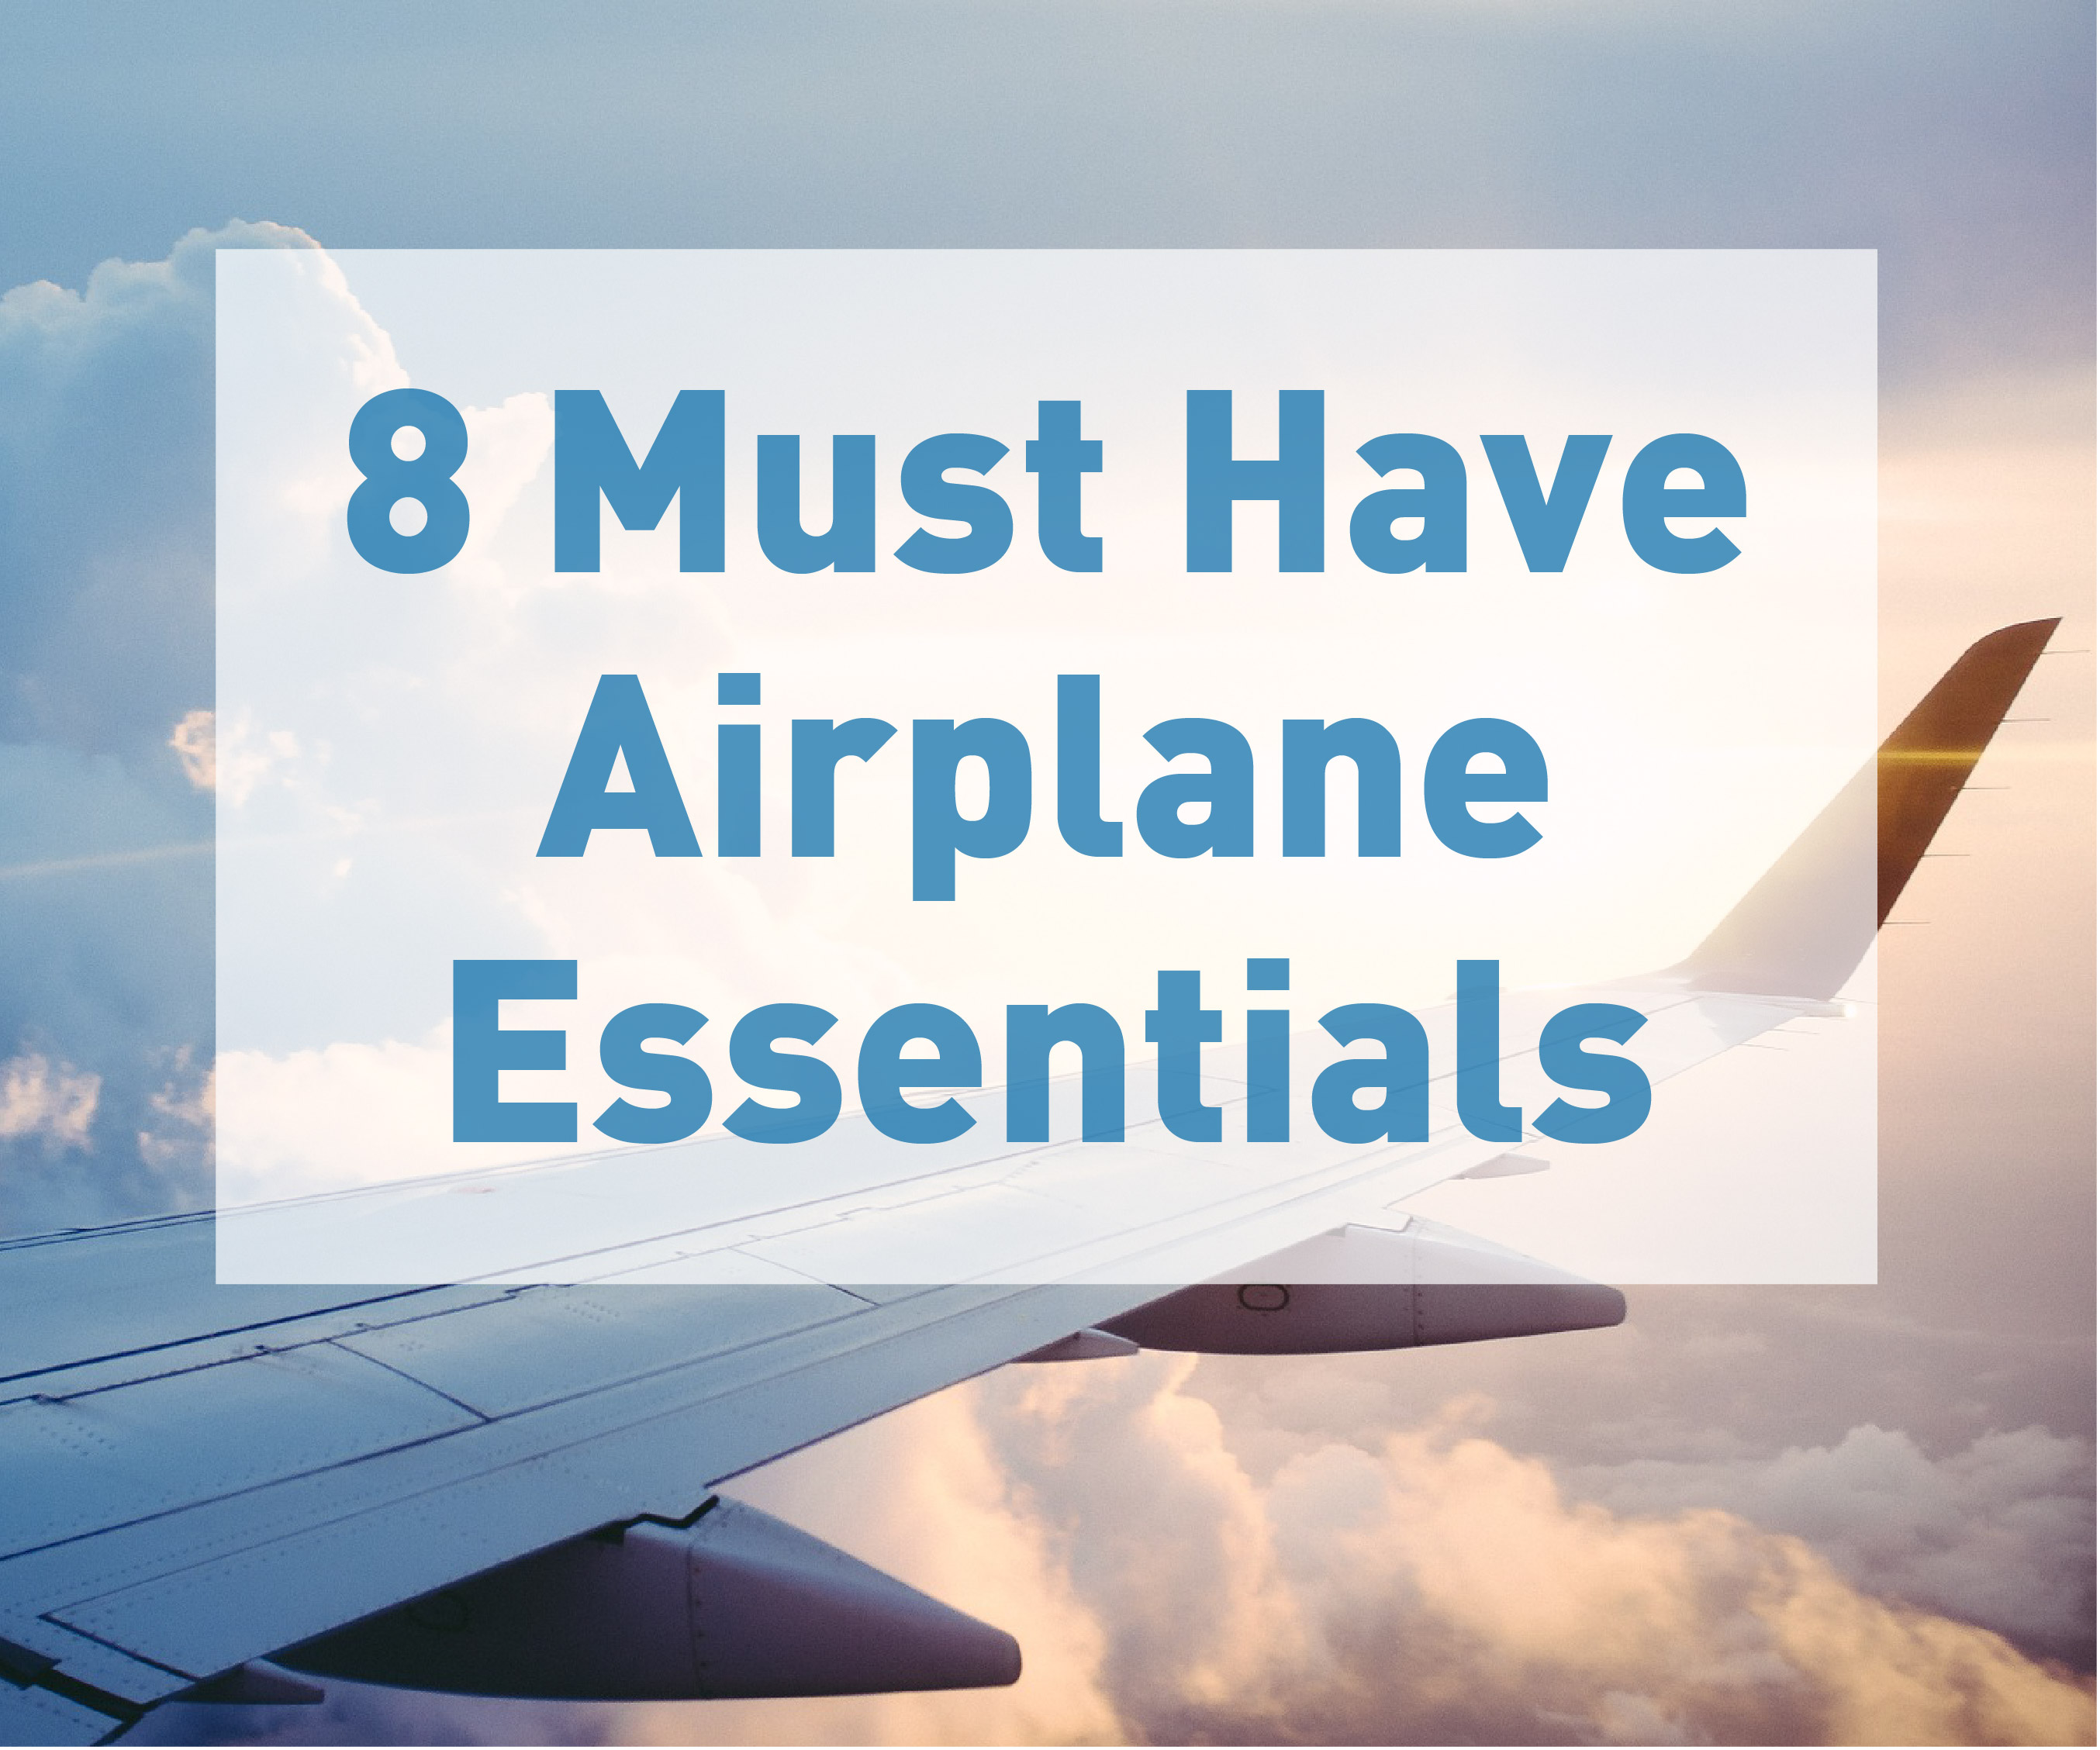 8 Must Have Airplane Essentials